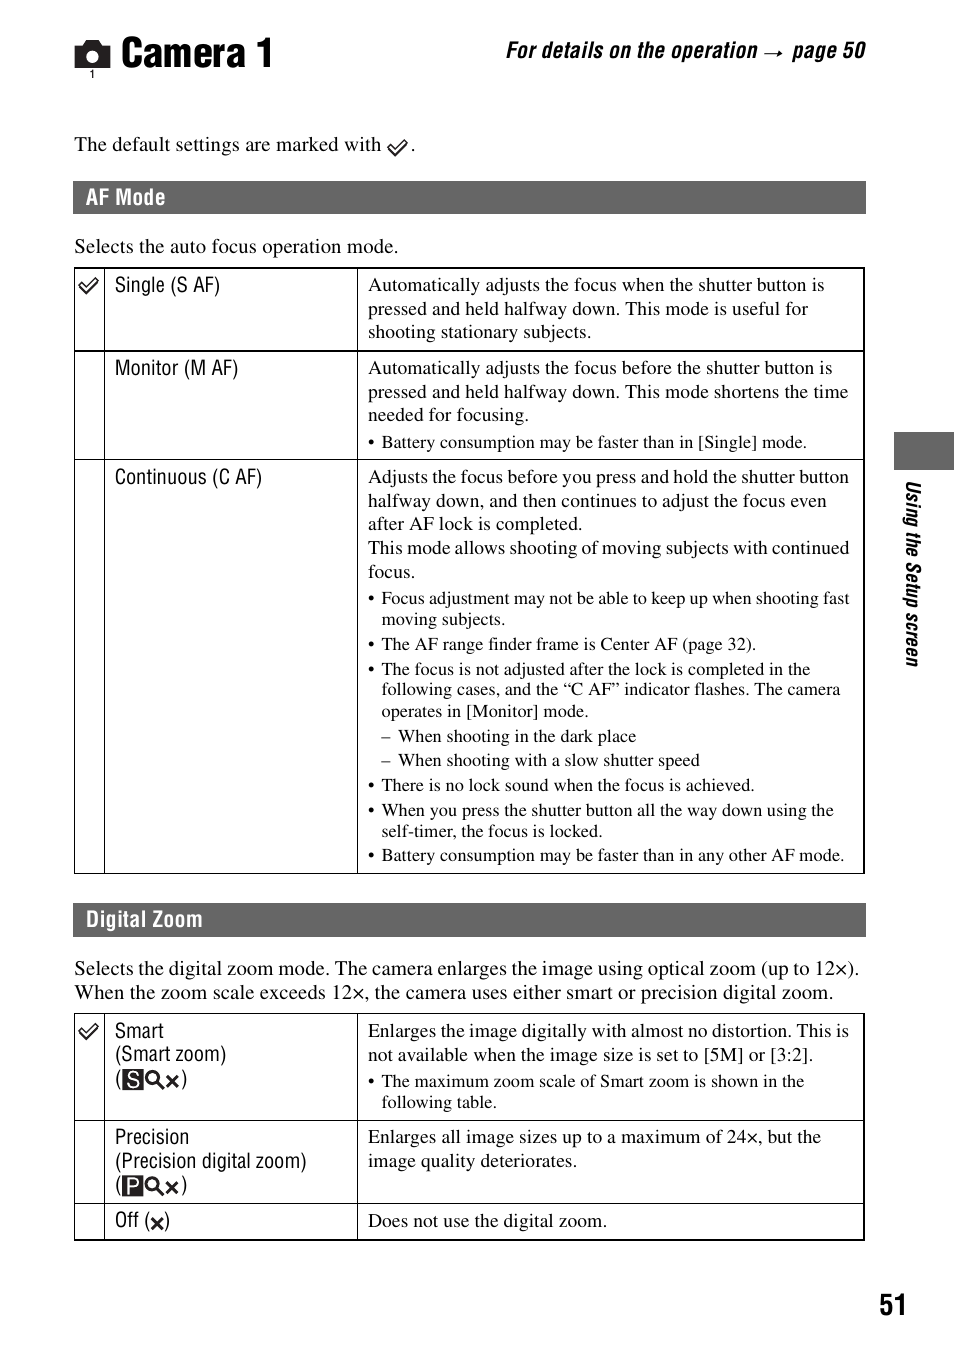 Camera 1, Af mode digital zoom | Sony DSC-H1 User Manual | Page 51 / 107